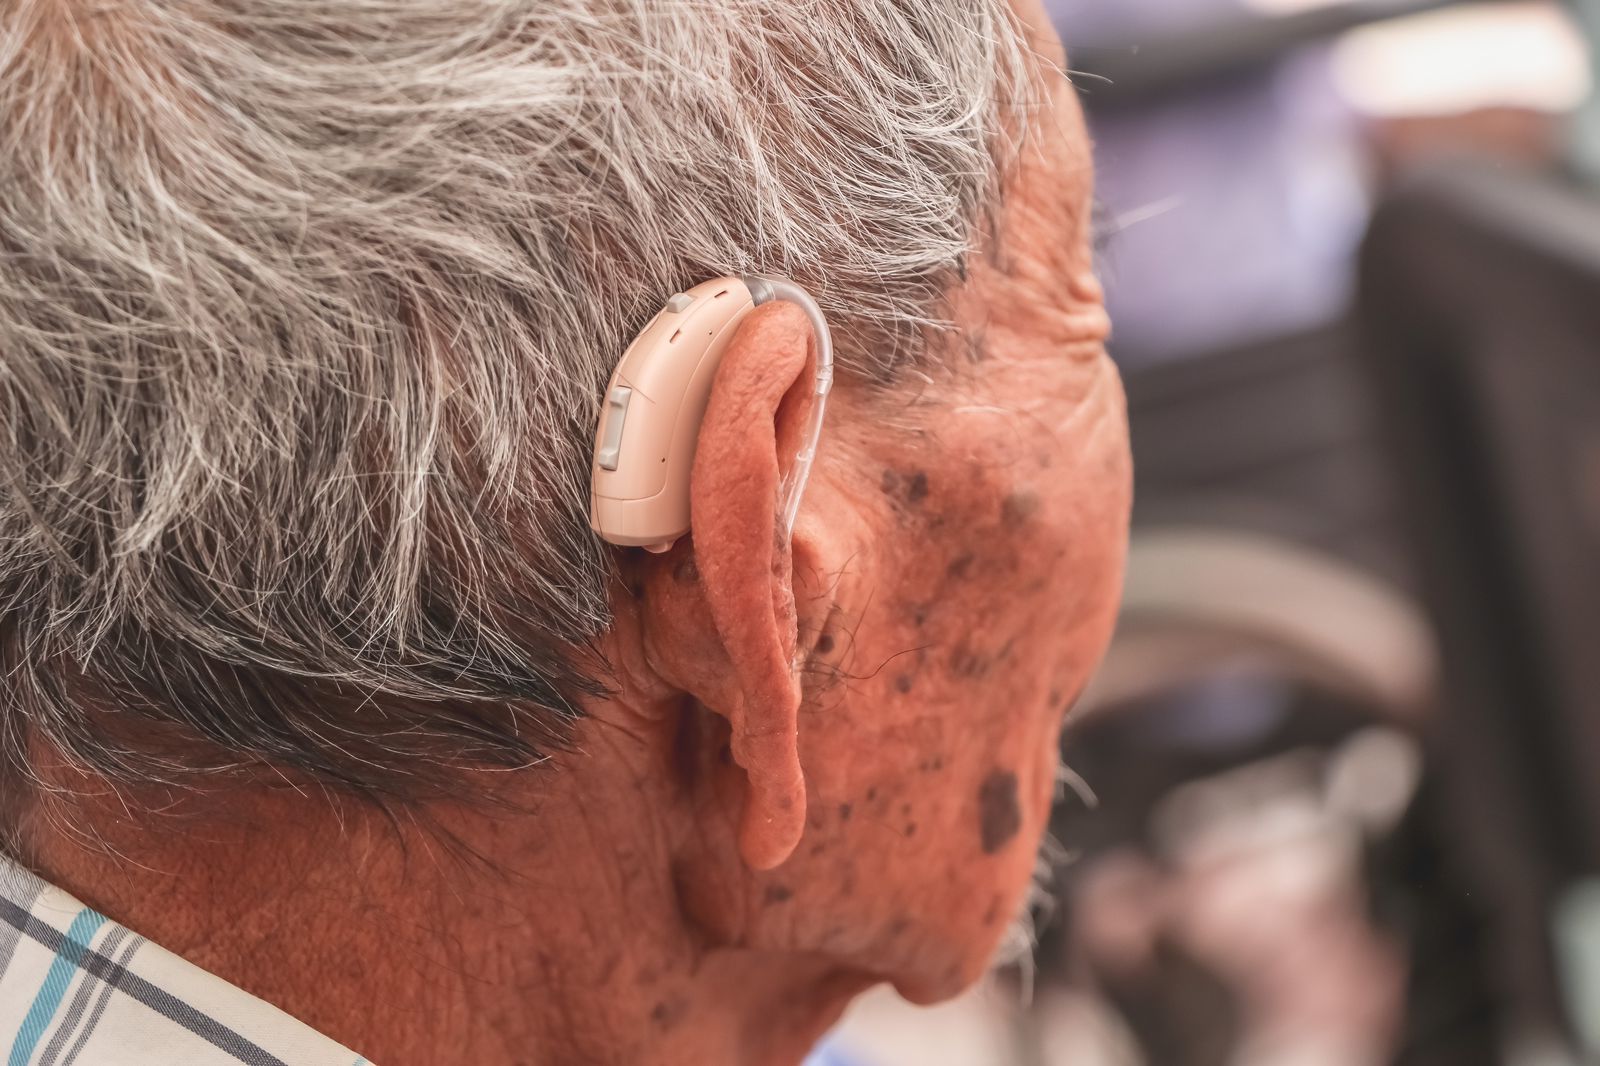 Beneficencia Pública planea ya una tercera entrega de aparatos auditivos